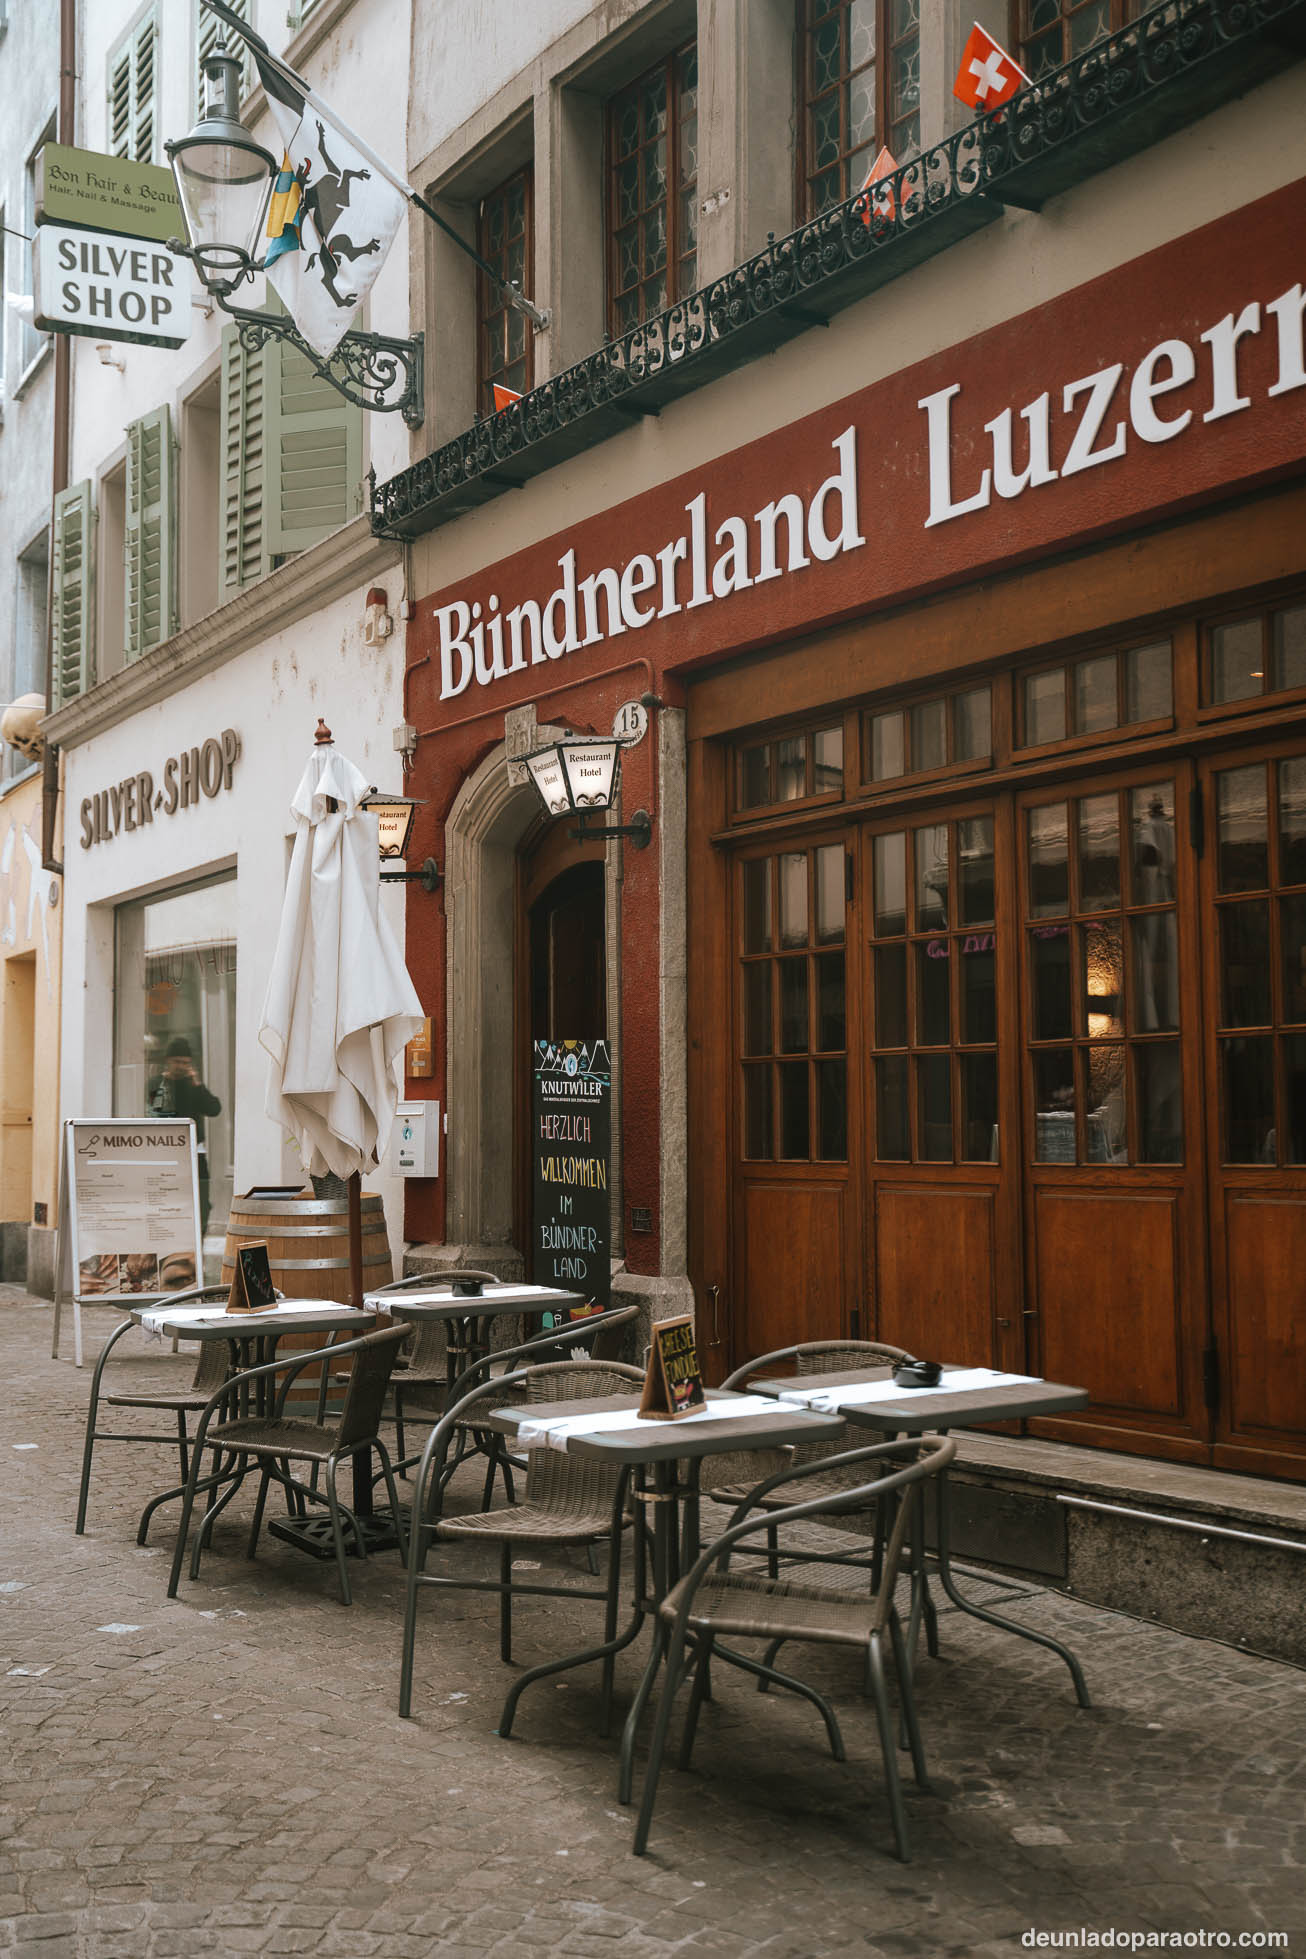 Uno de los mejores planes que hacer en Lucerna en un día, es probar algunos de los platos más típicos de la región, como la famosa fondue de queso y el Luzerner Chügelipastete